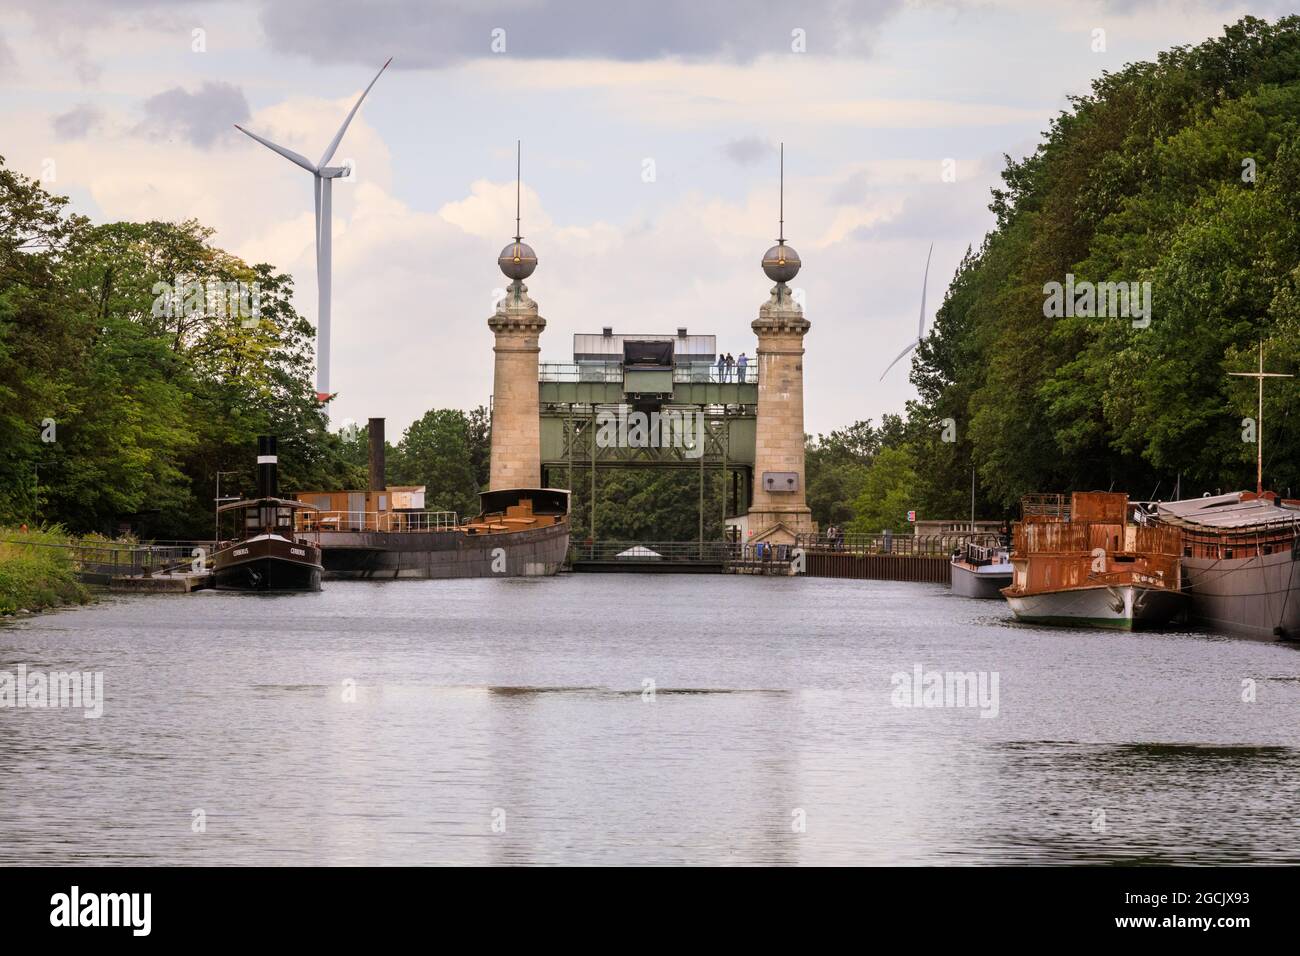 Schiffshebewerk, Henrichenburg Old Boat Lift, Industriedenkmal am Dortmund-Ems-Kanal, Waltrop, Nordrhein-Westfalen, Deutschland Stockfoto